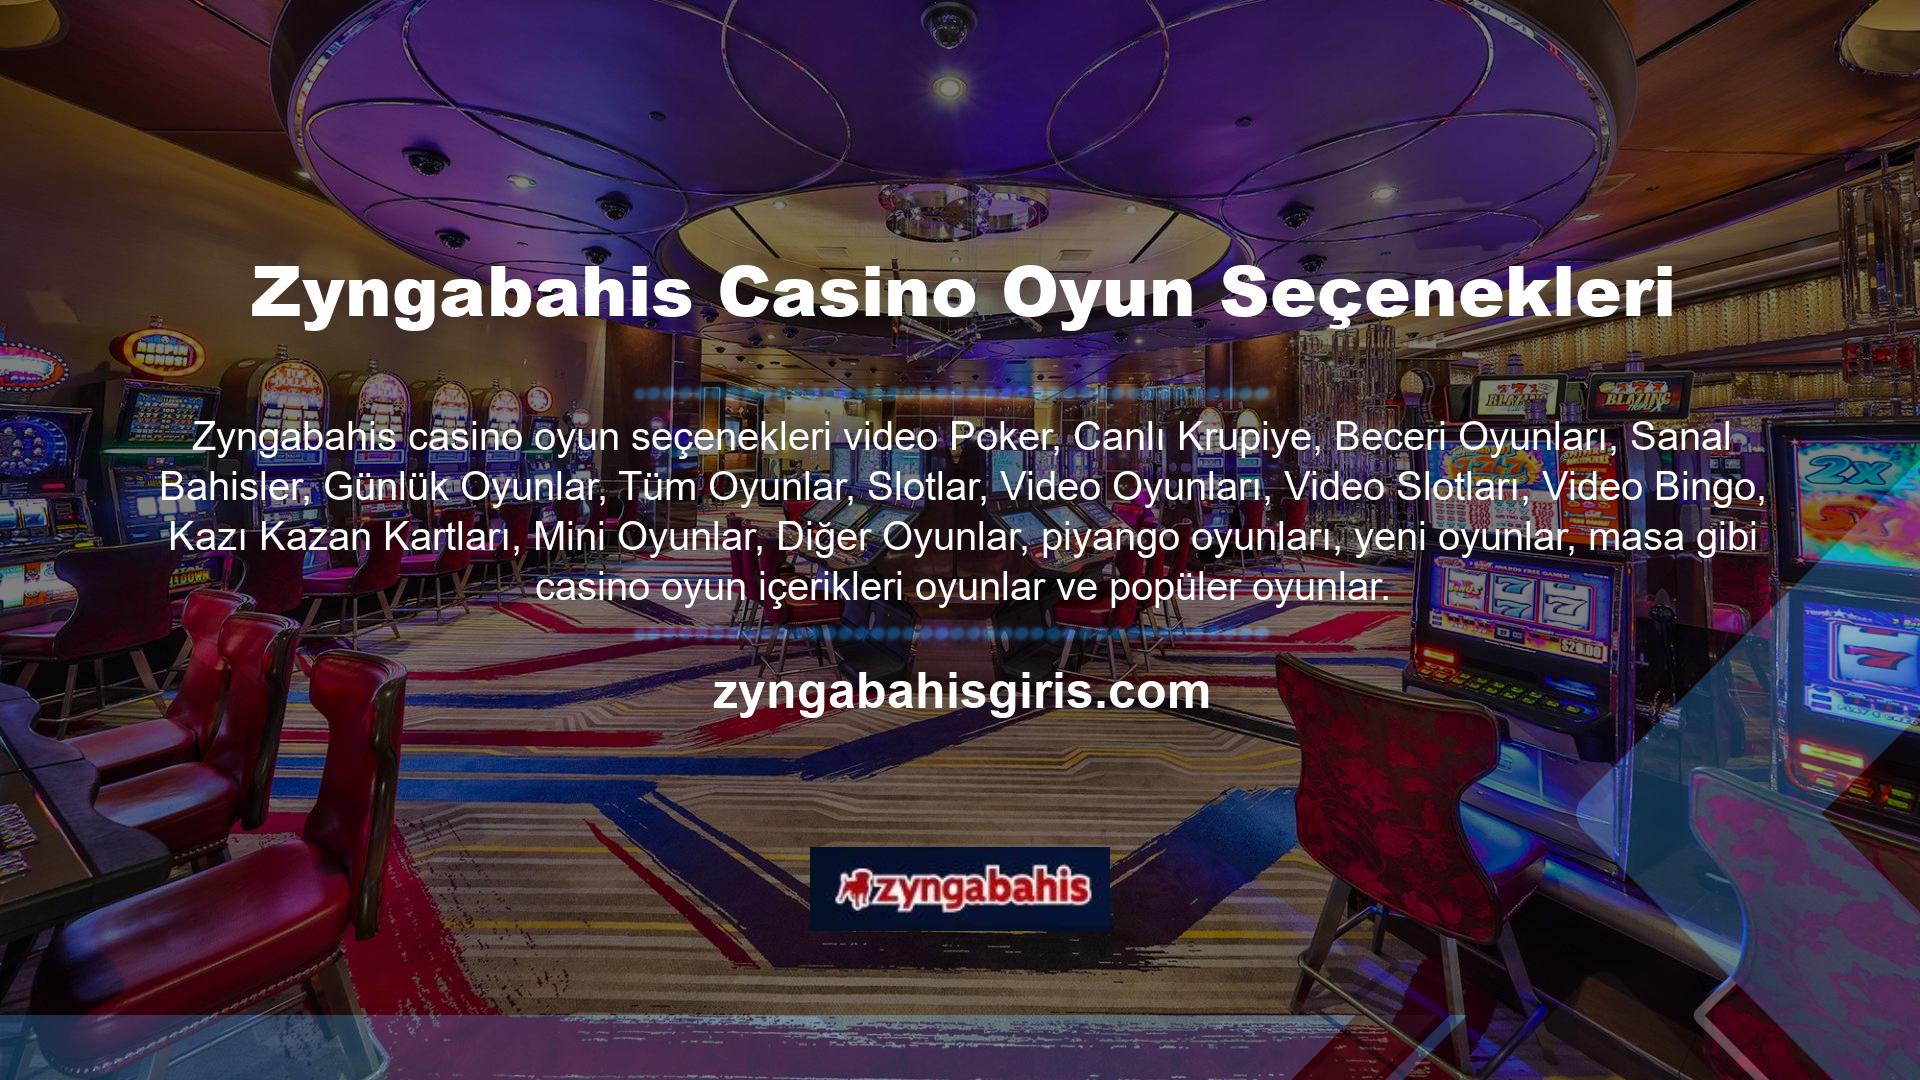 Zyngabahis Canlı Casino kategorisi, Canlı Online Blackjack, Canlı Online Bakara, Texas Hold'em Poker, Canlı Online Rulet ve Canlı Zyngabahis On Poker gibi online casino oyun içeriğini içerir